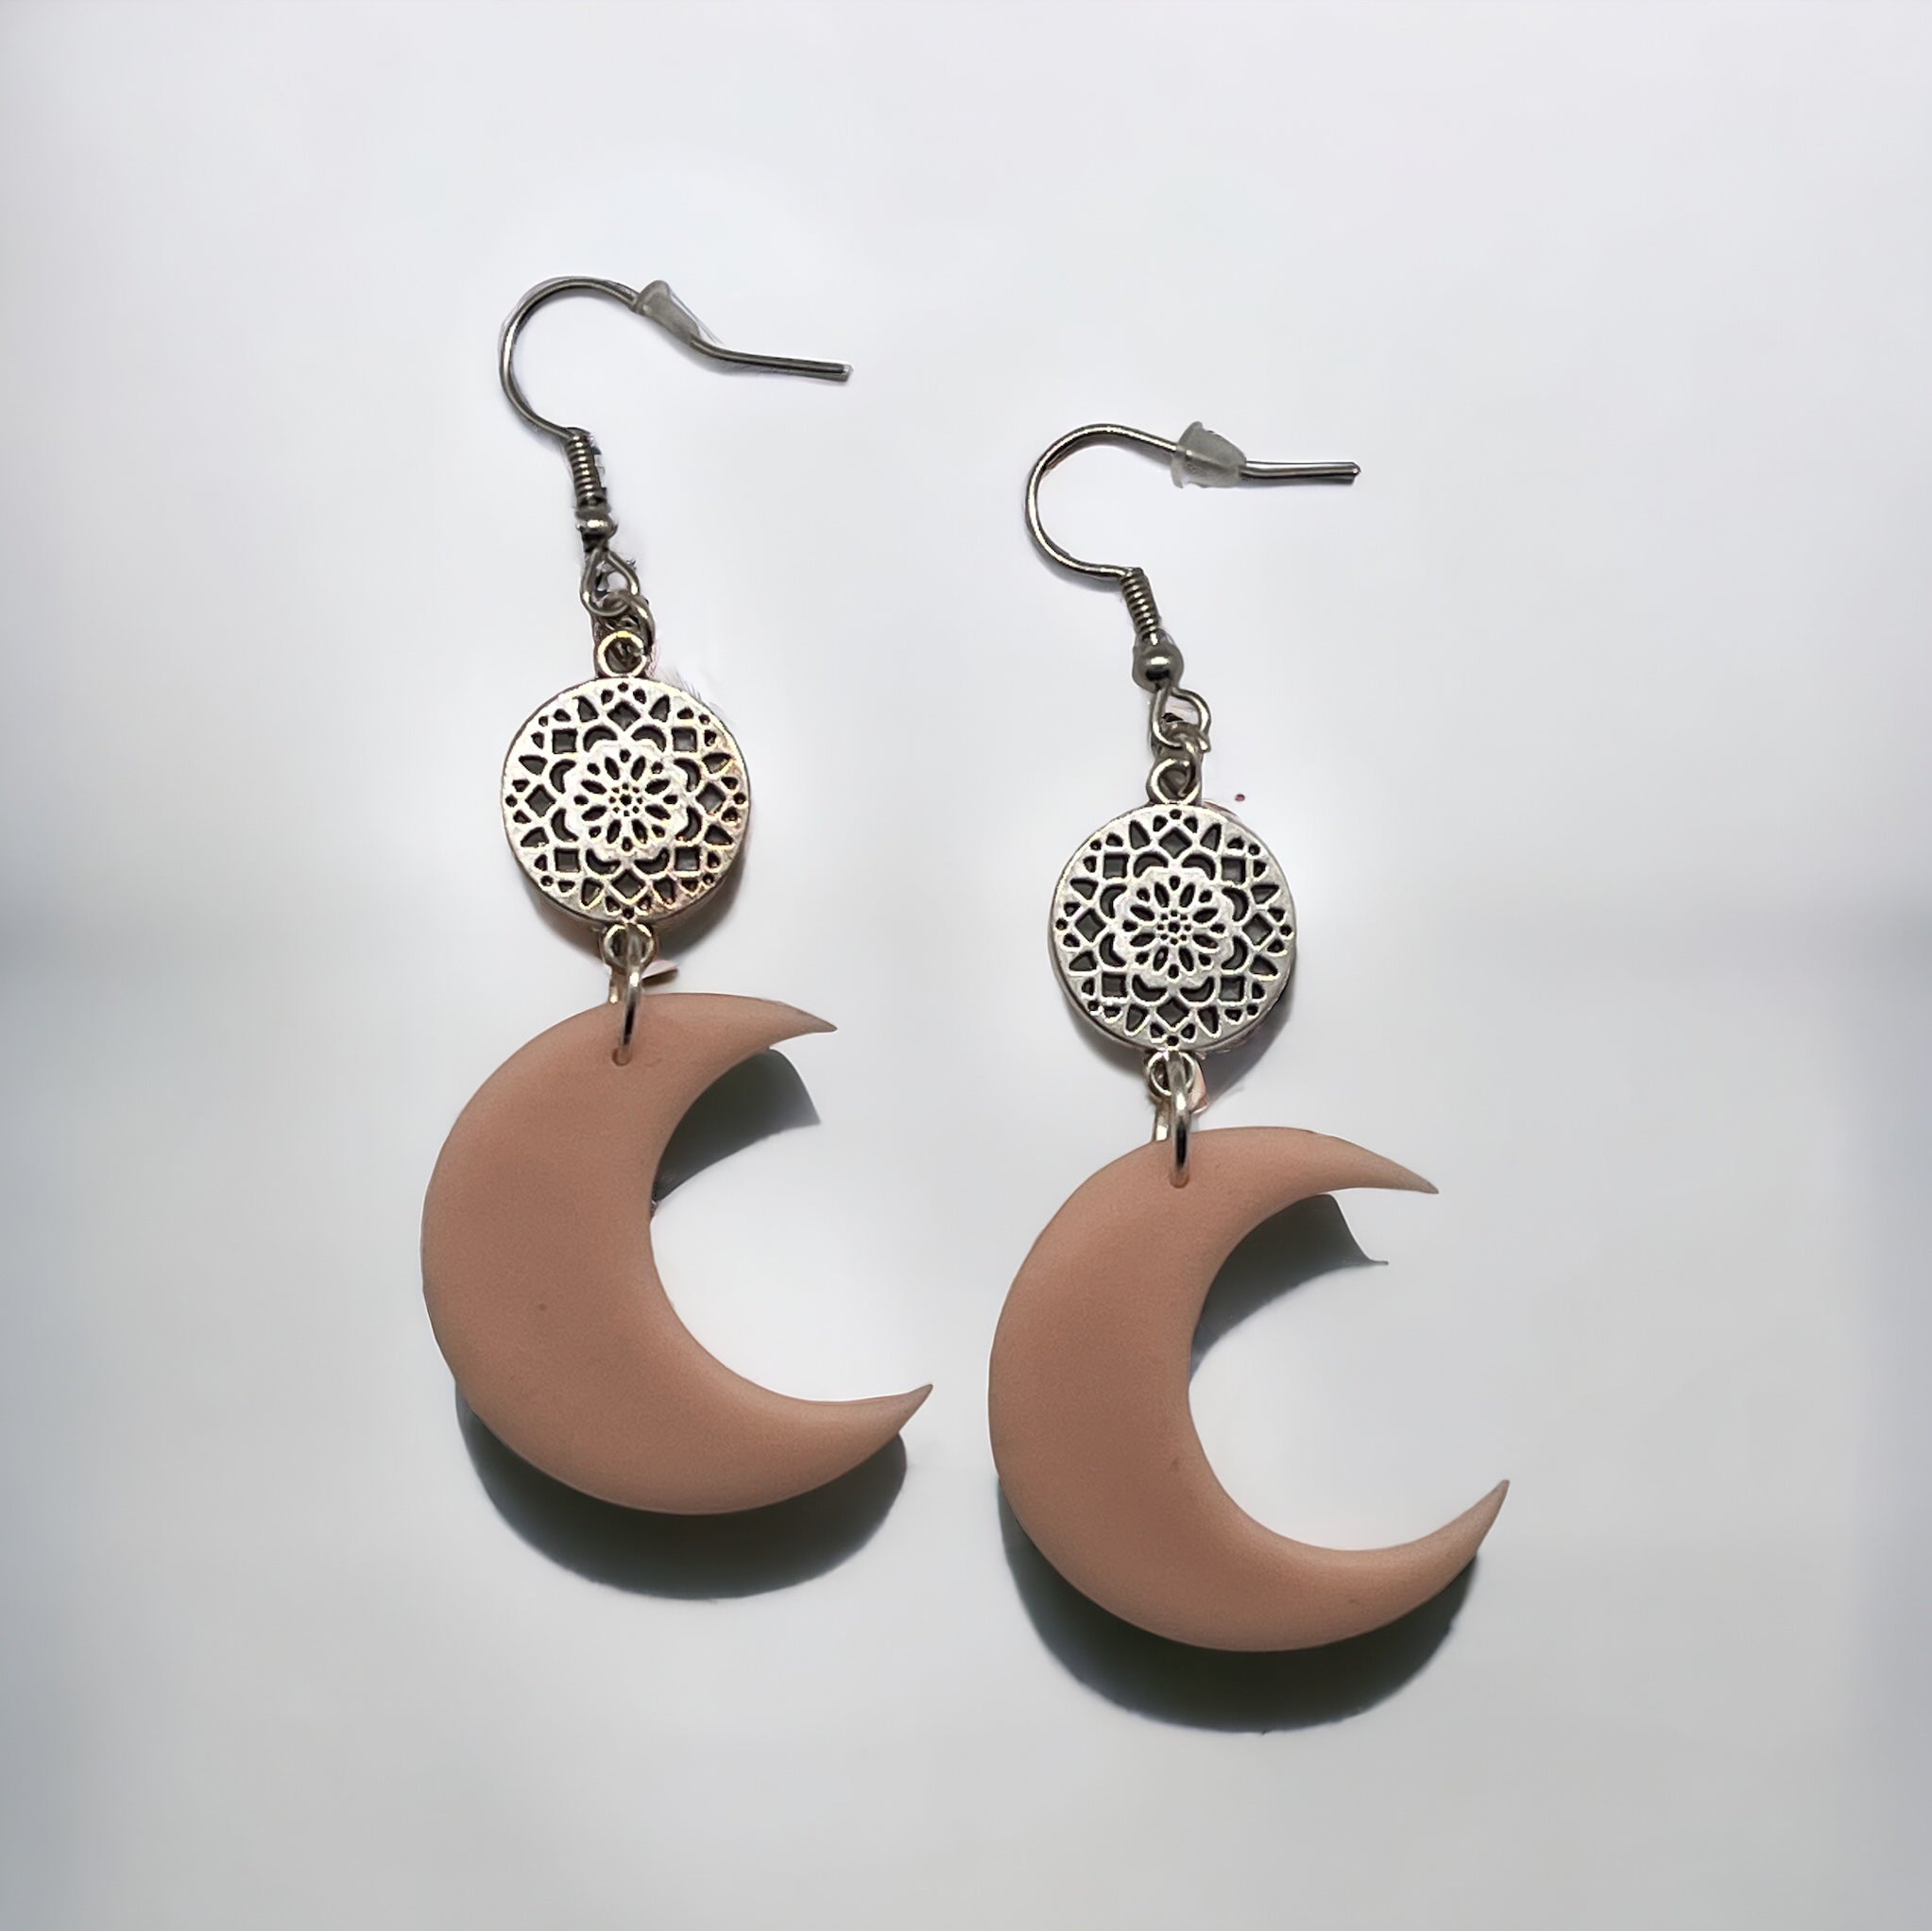 Buy Cresent Moon Stud Earrings, White Horn Earrings , Moon Earrings ,  Double Horn Earrings , Large Crescent Moon Stud Earrings Online in India -  Etsy